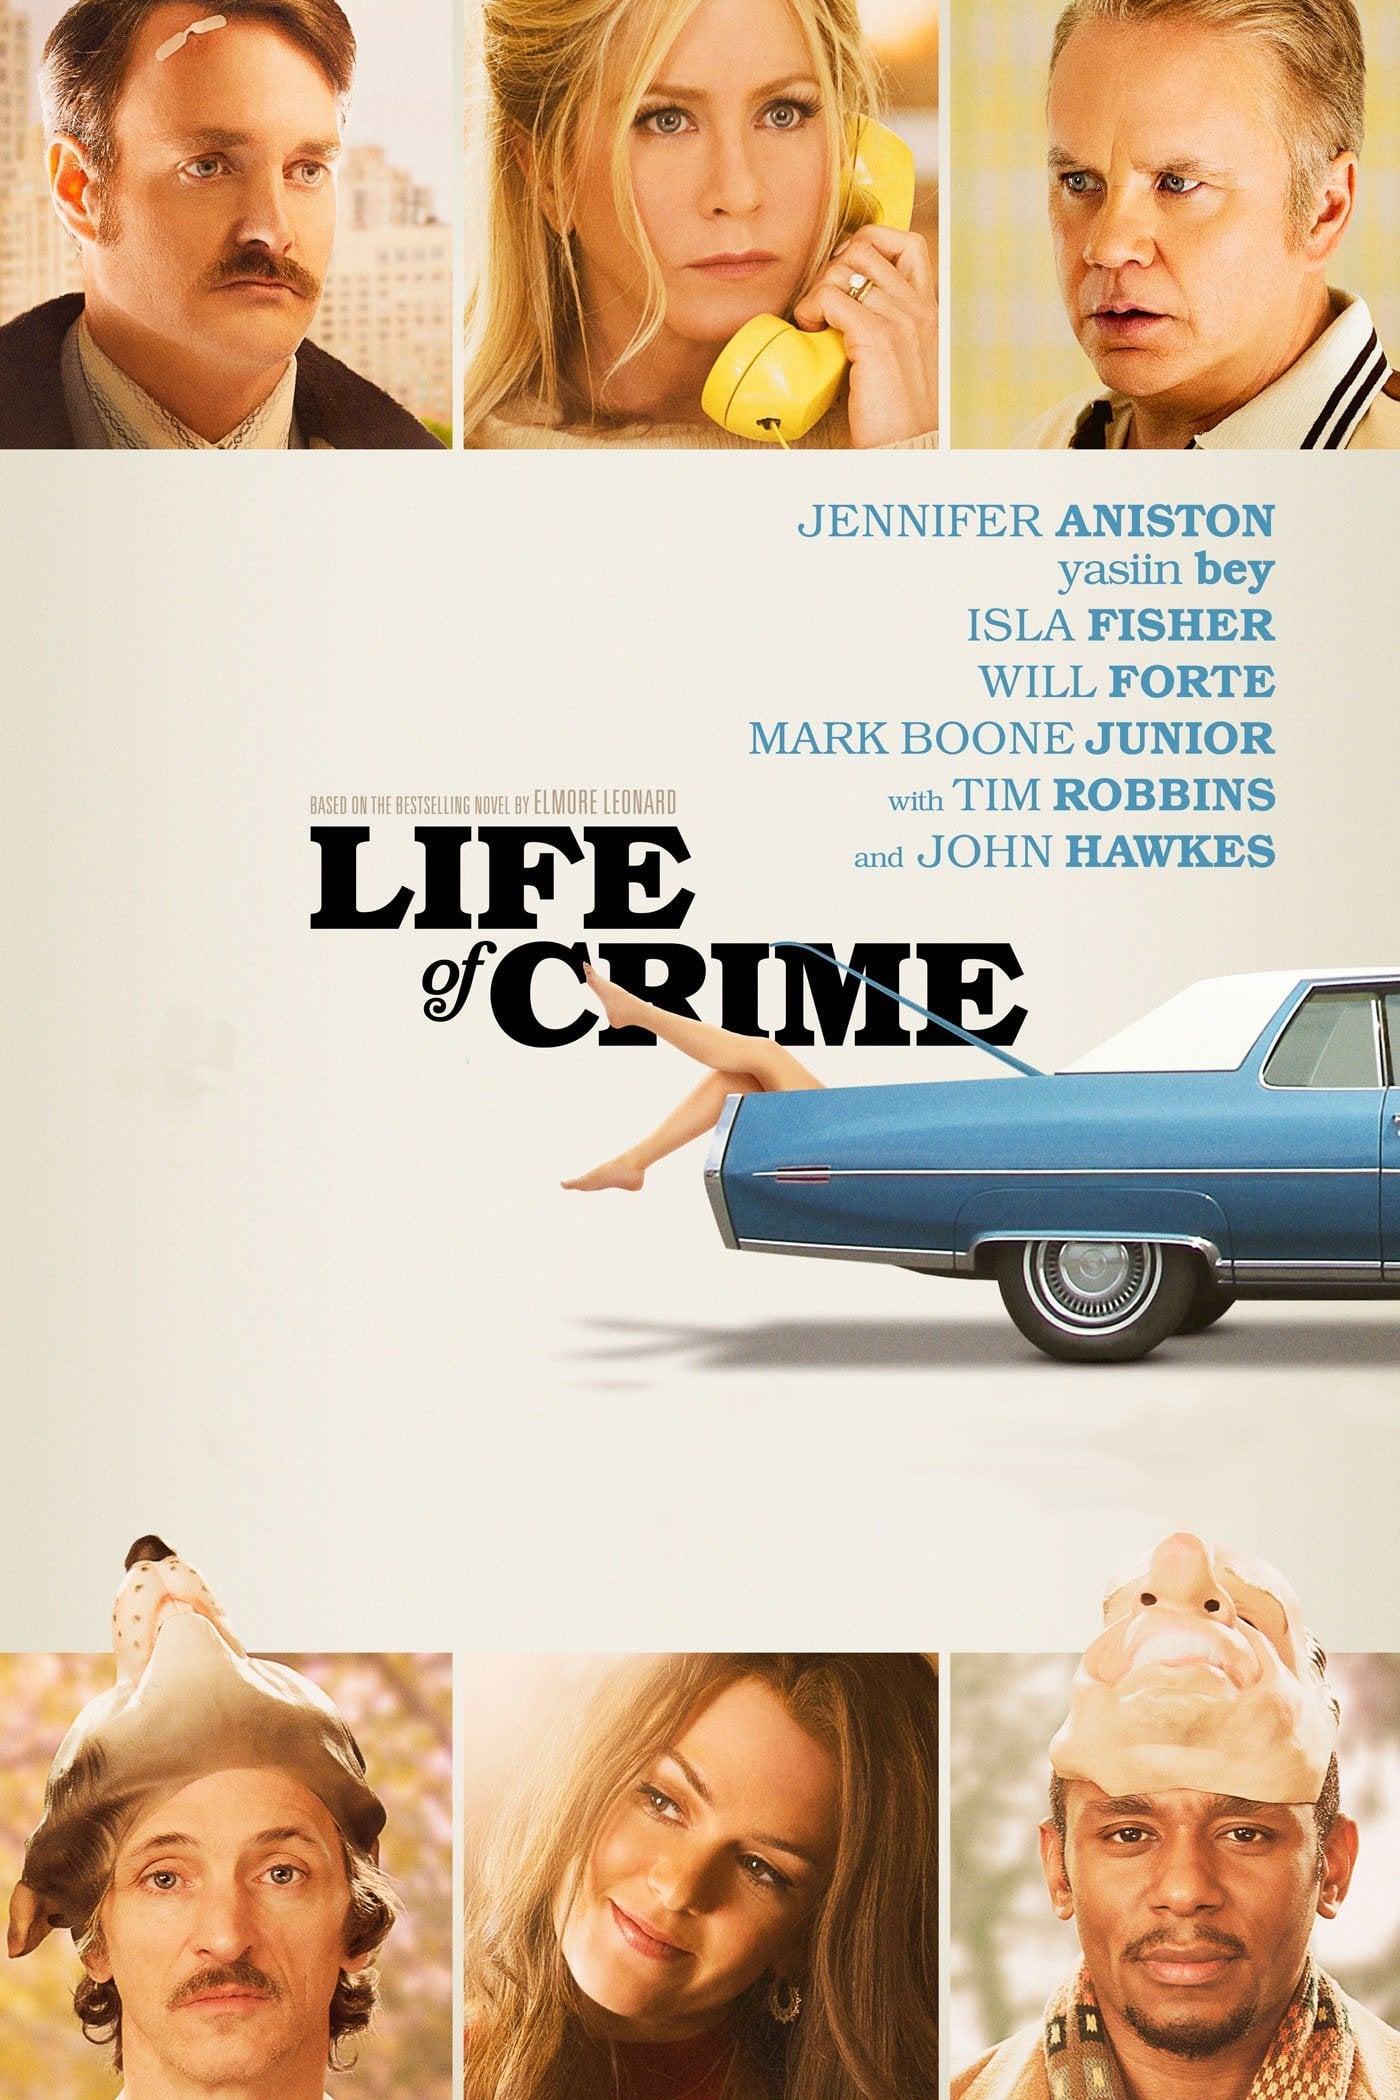 Plakat von "Life of Crime"